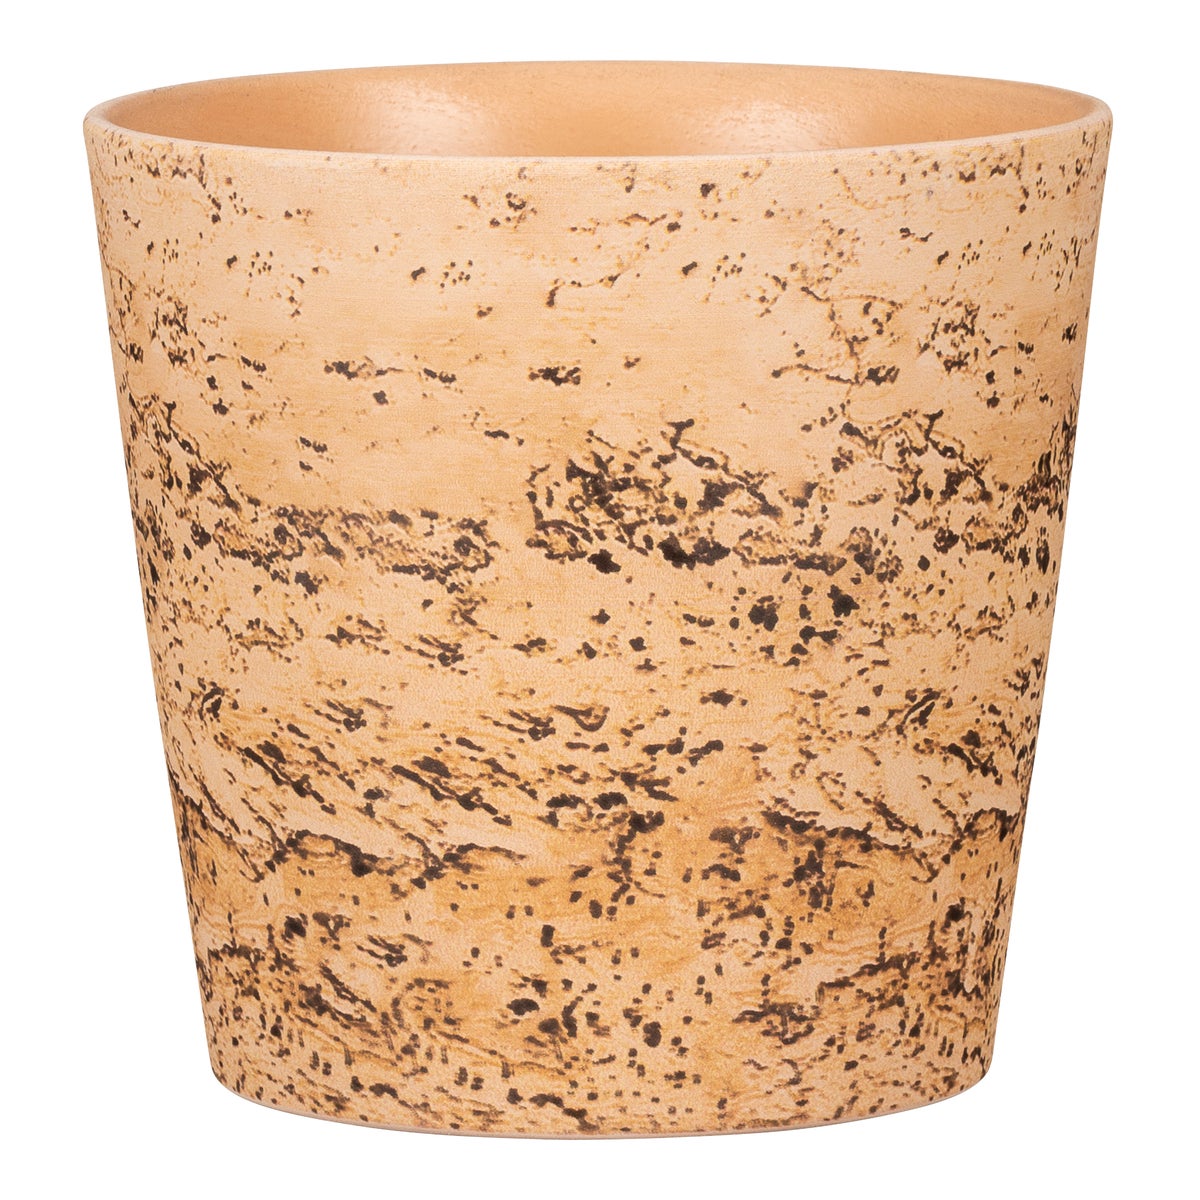 Scheurich Cork Style, Blumentopf aus Keramik,  Farbe: Cork, 19 cm Durchmesser, 15,2 cm hoch, 3,2 l Vol.